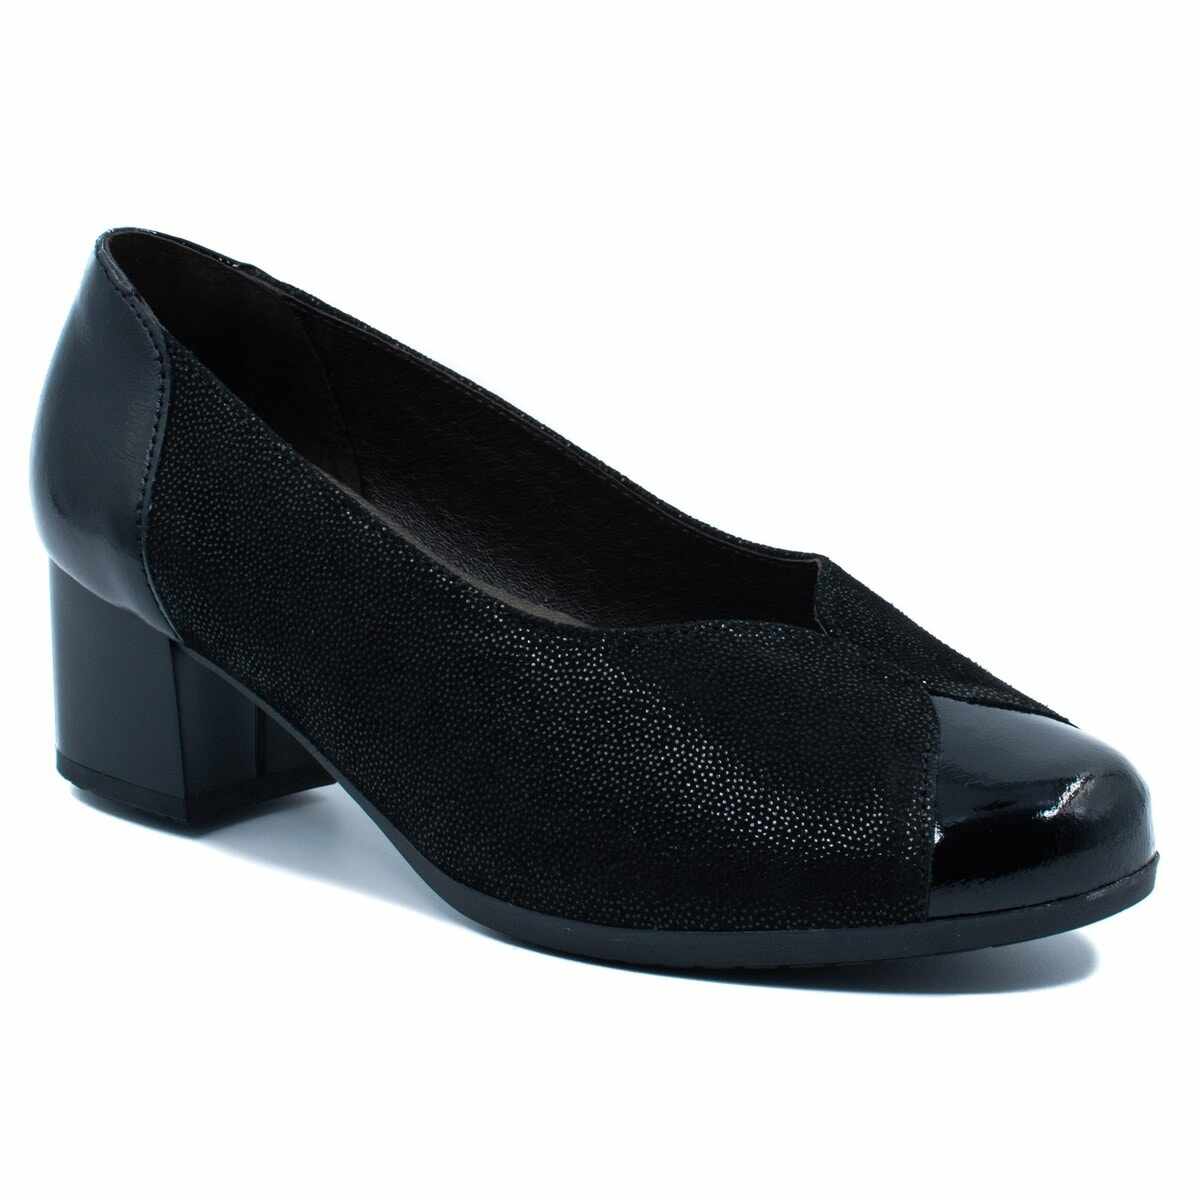 Pantofi casual dama, Alpina, din piele intoarsa, culoare negru